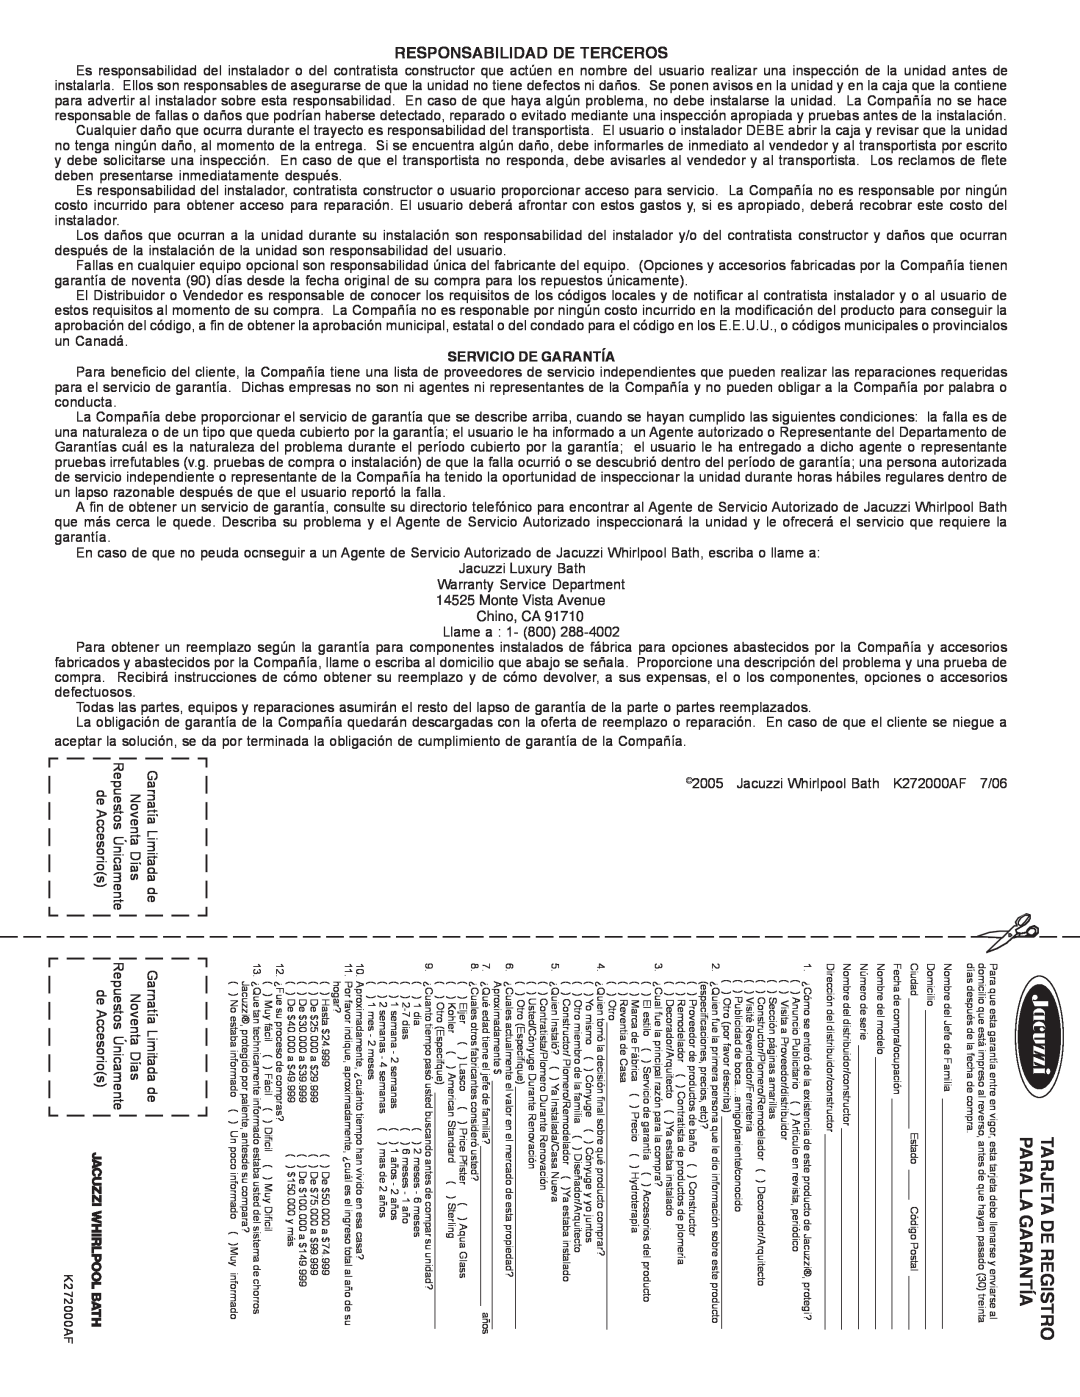 Jacuzzi K272000AF 7/06 manual Tarjeta De Registro Para La Garantía, Responsabilidad De Terceros, Servicio De Garantía 